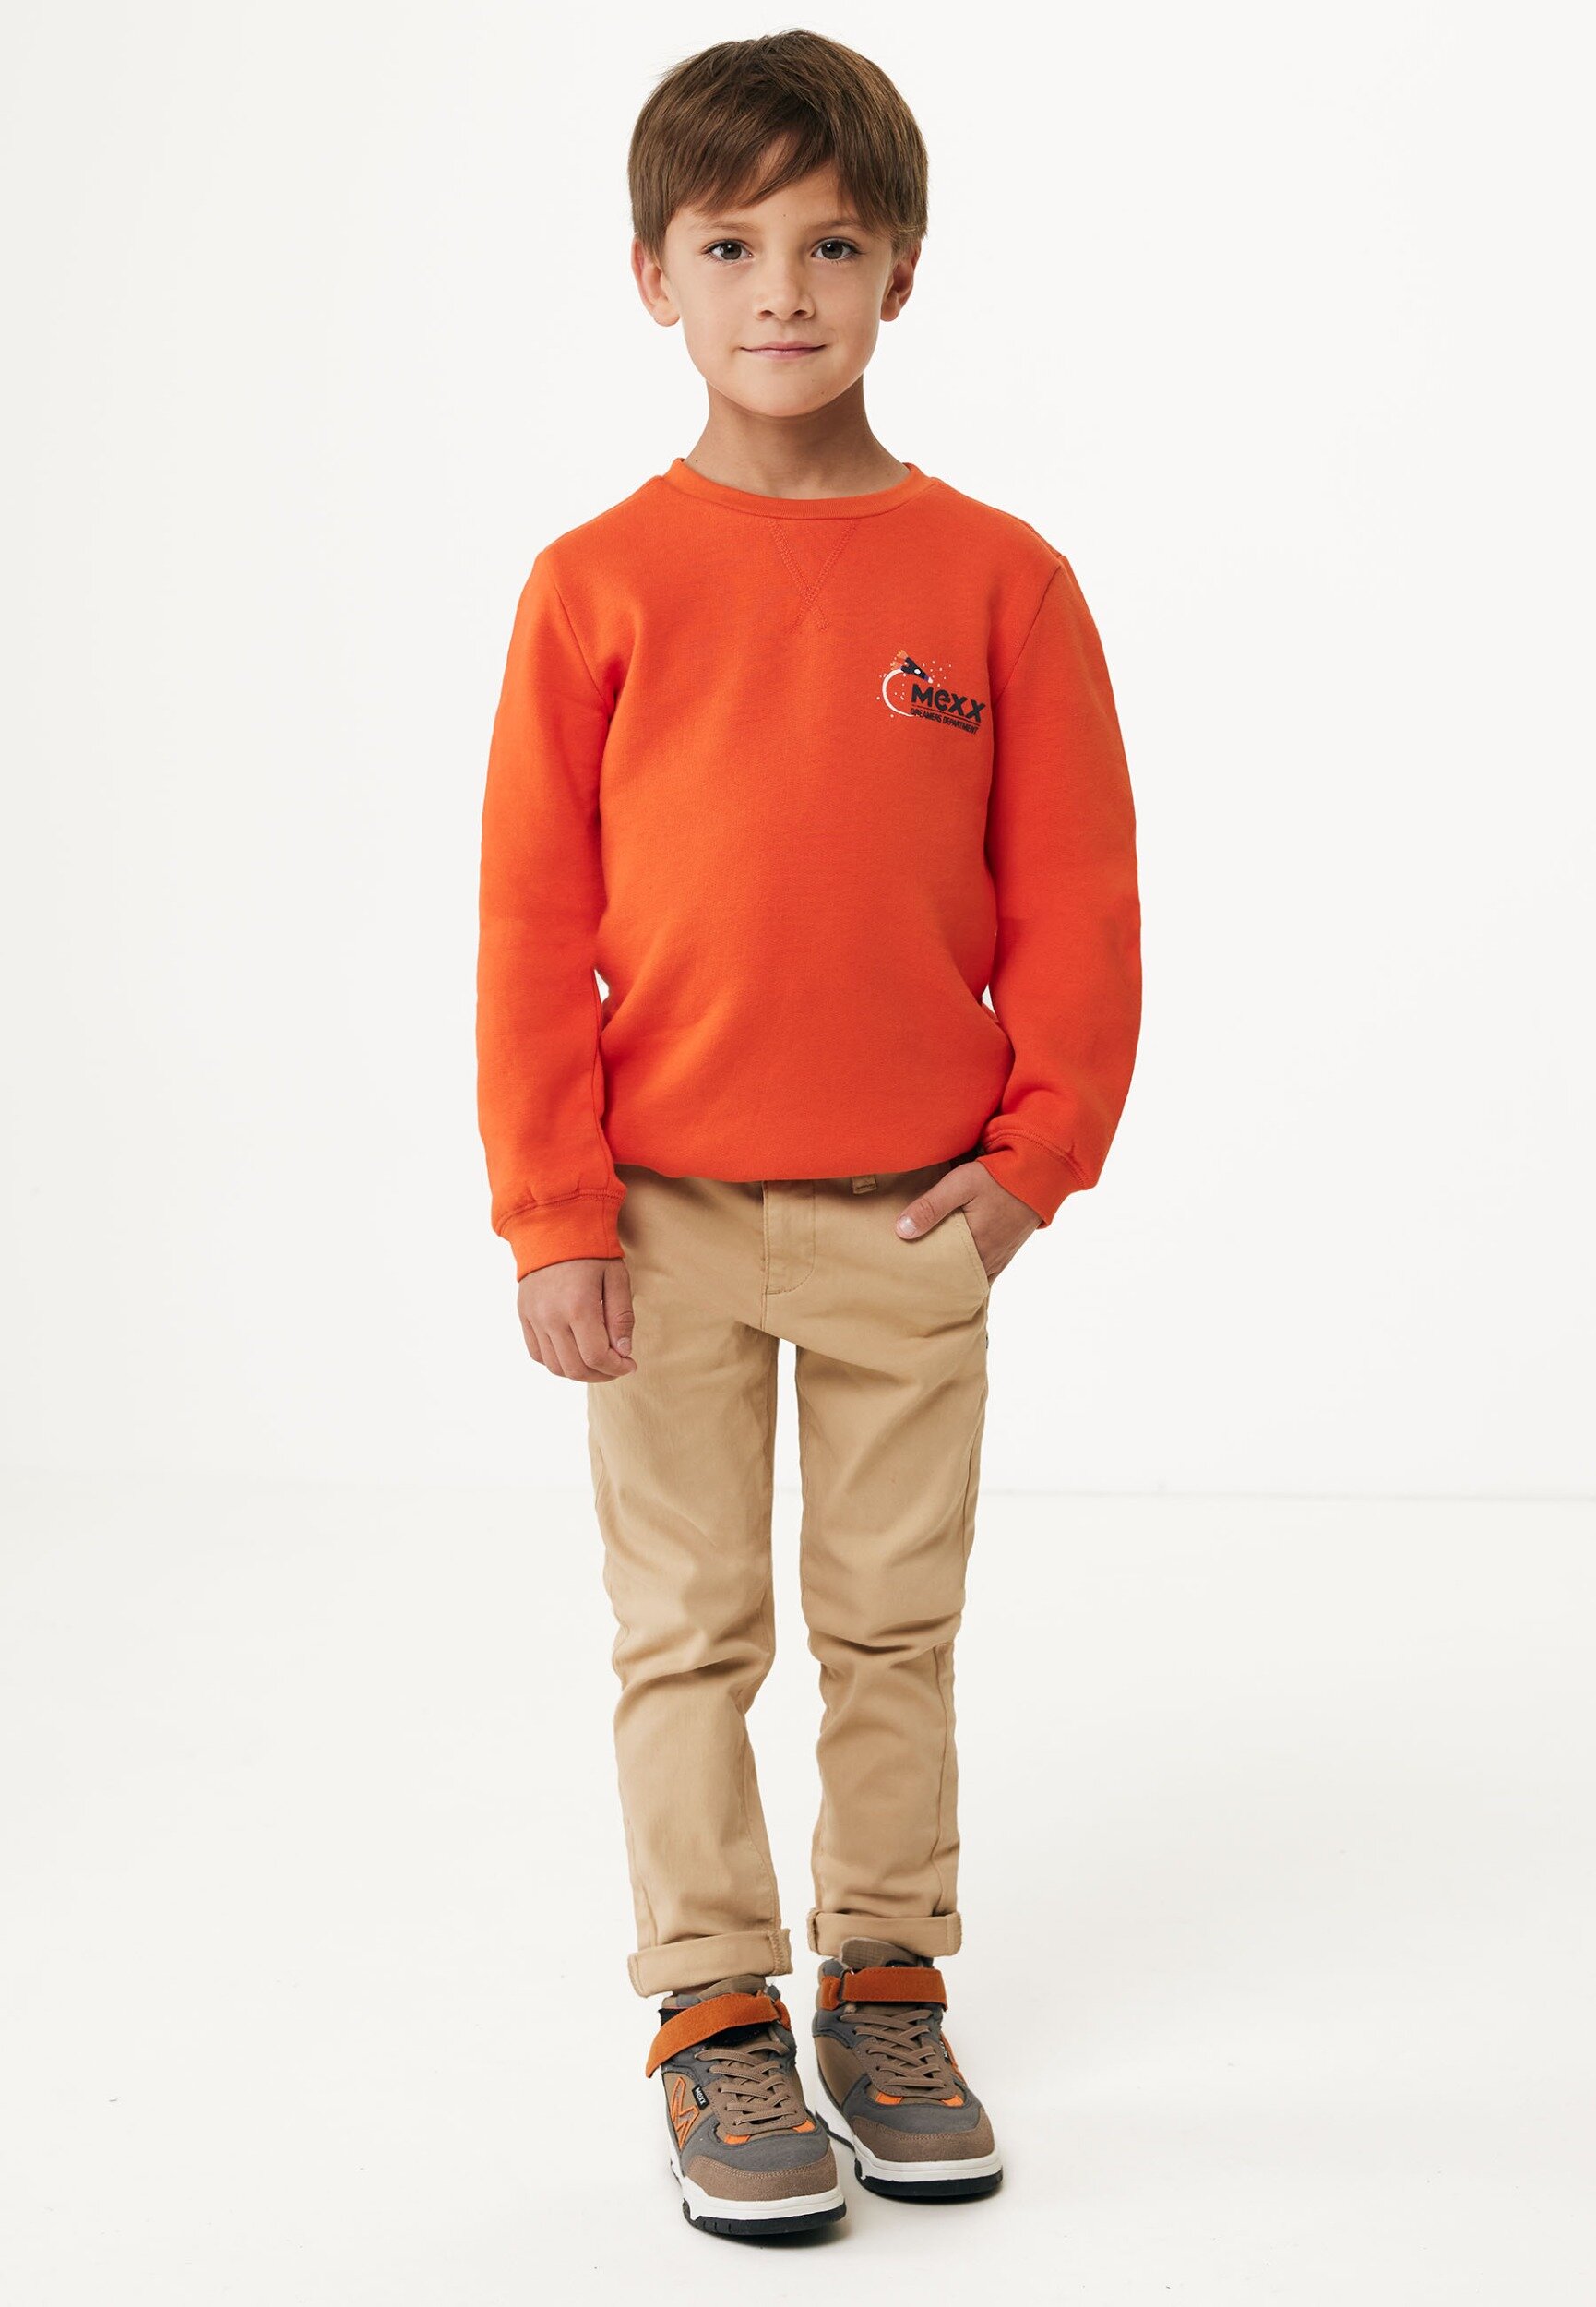 Sweater with artwork Orange von Mexx